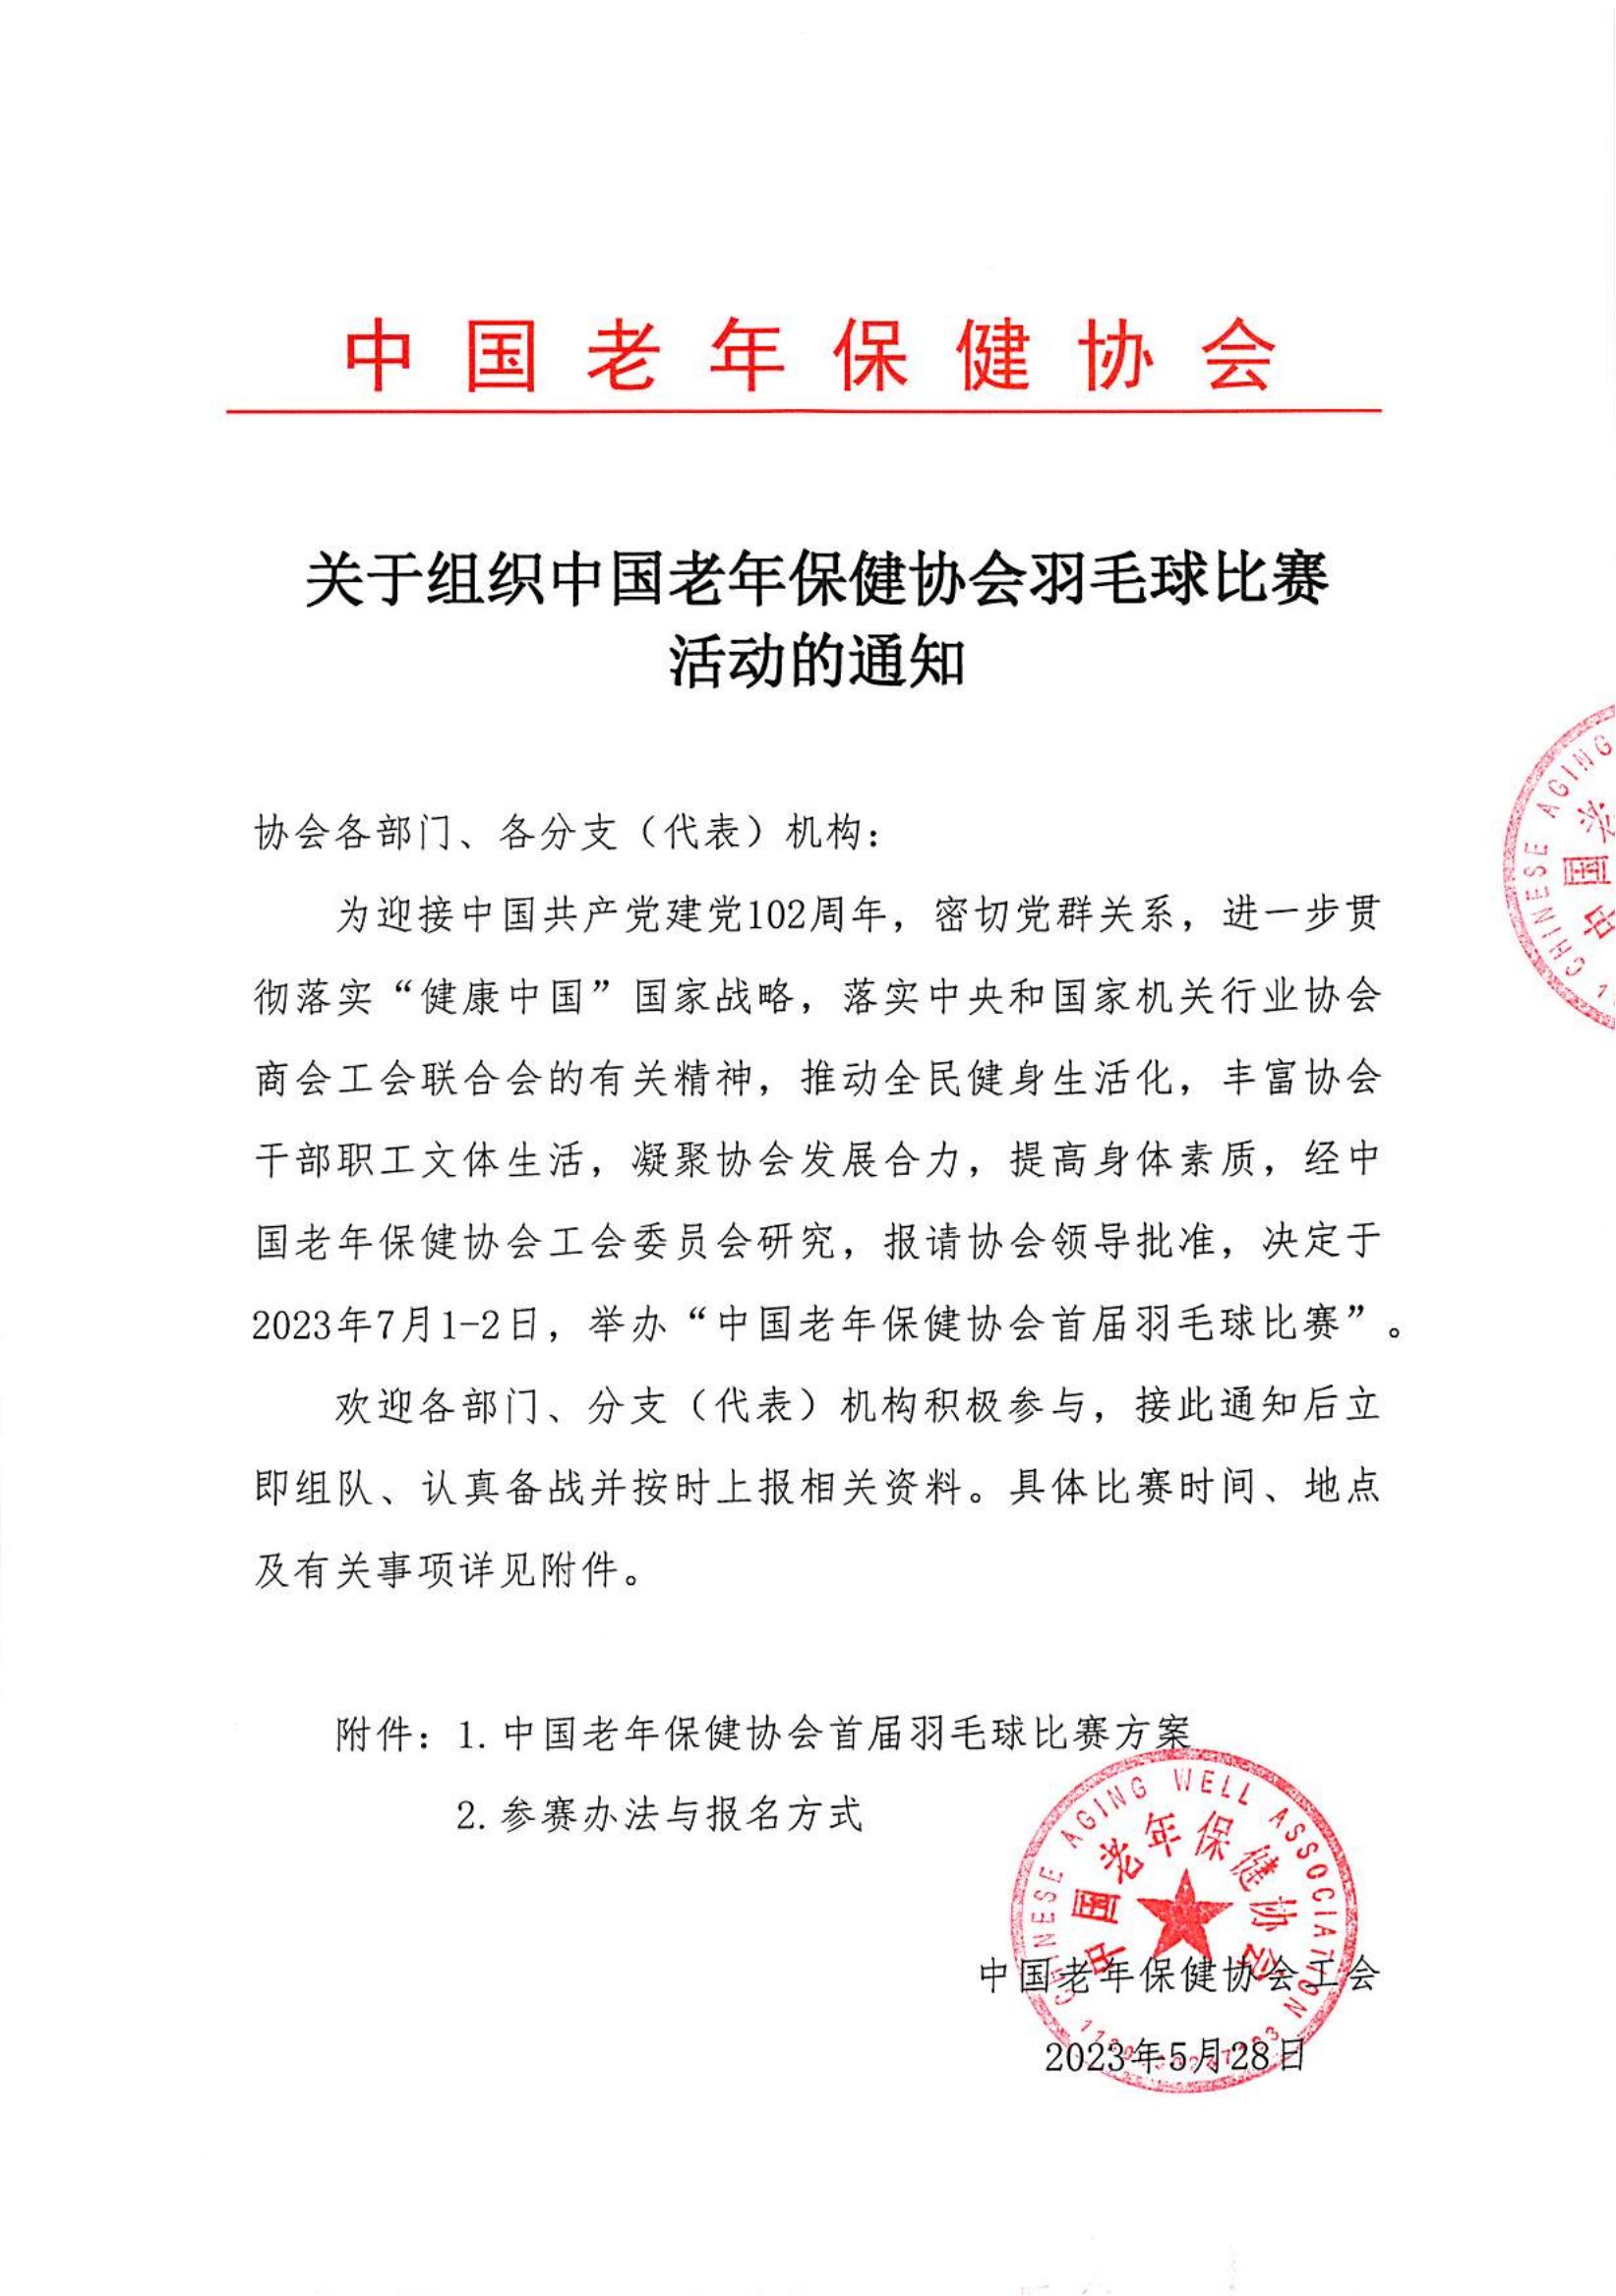 关于组织中国老年保健协会羽毛球比赛活动的通知_00.jpg